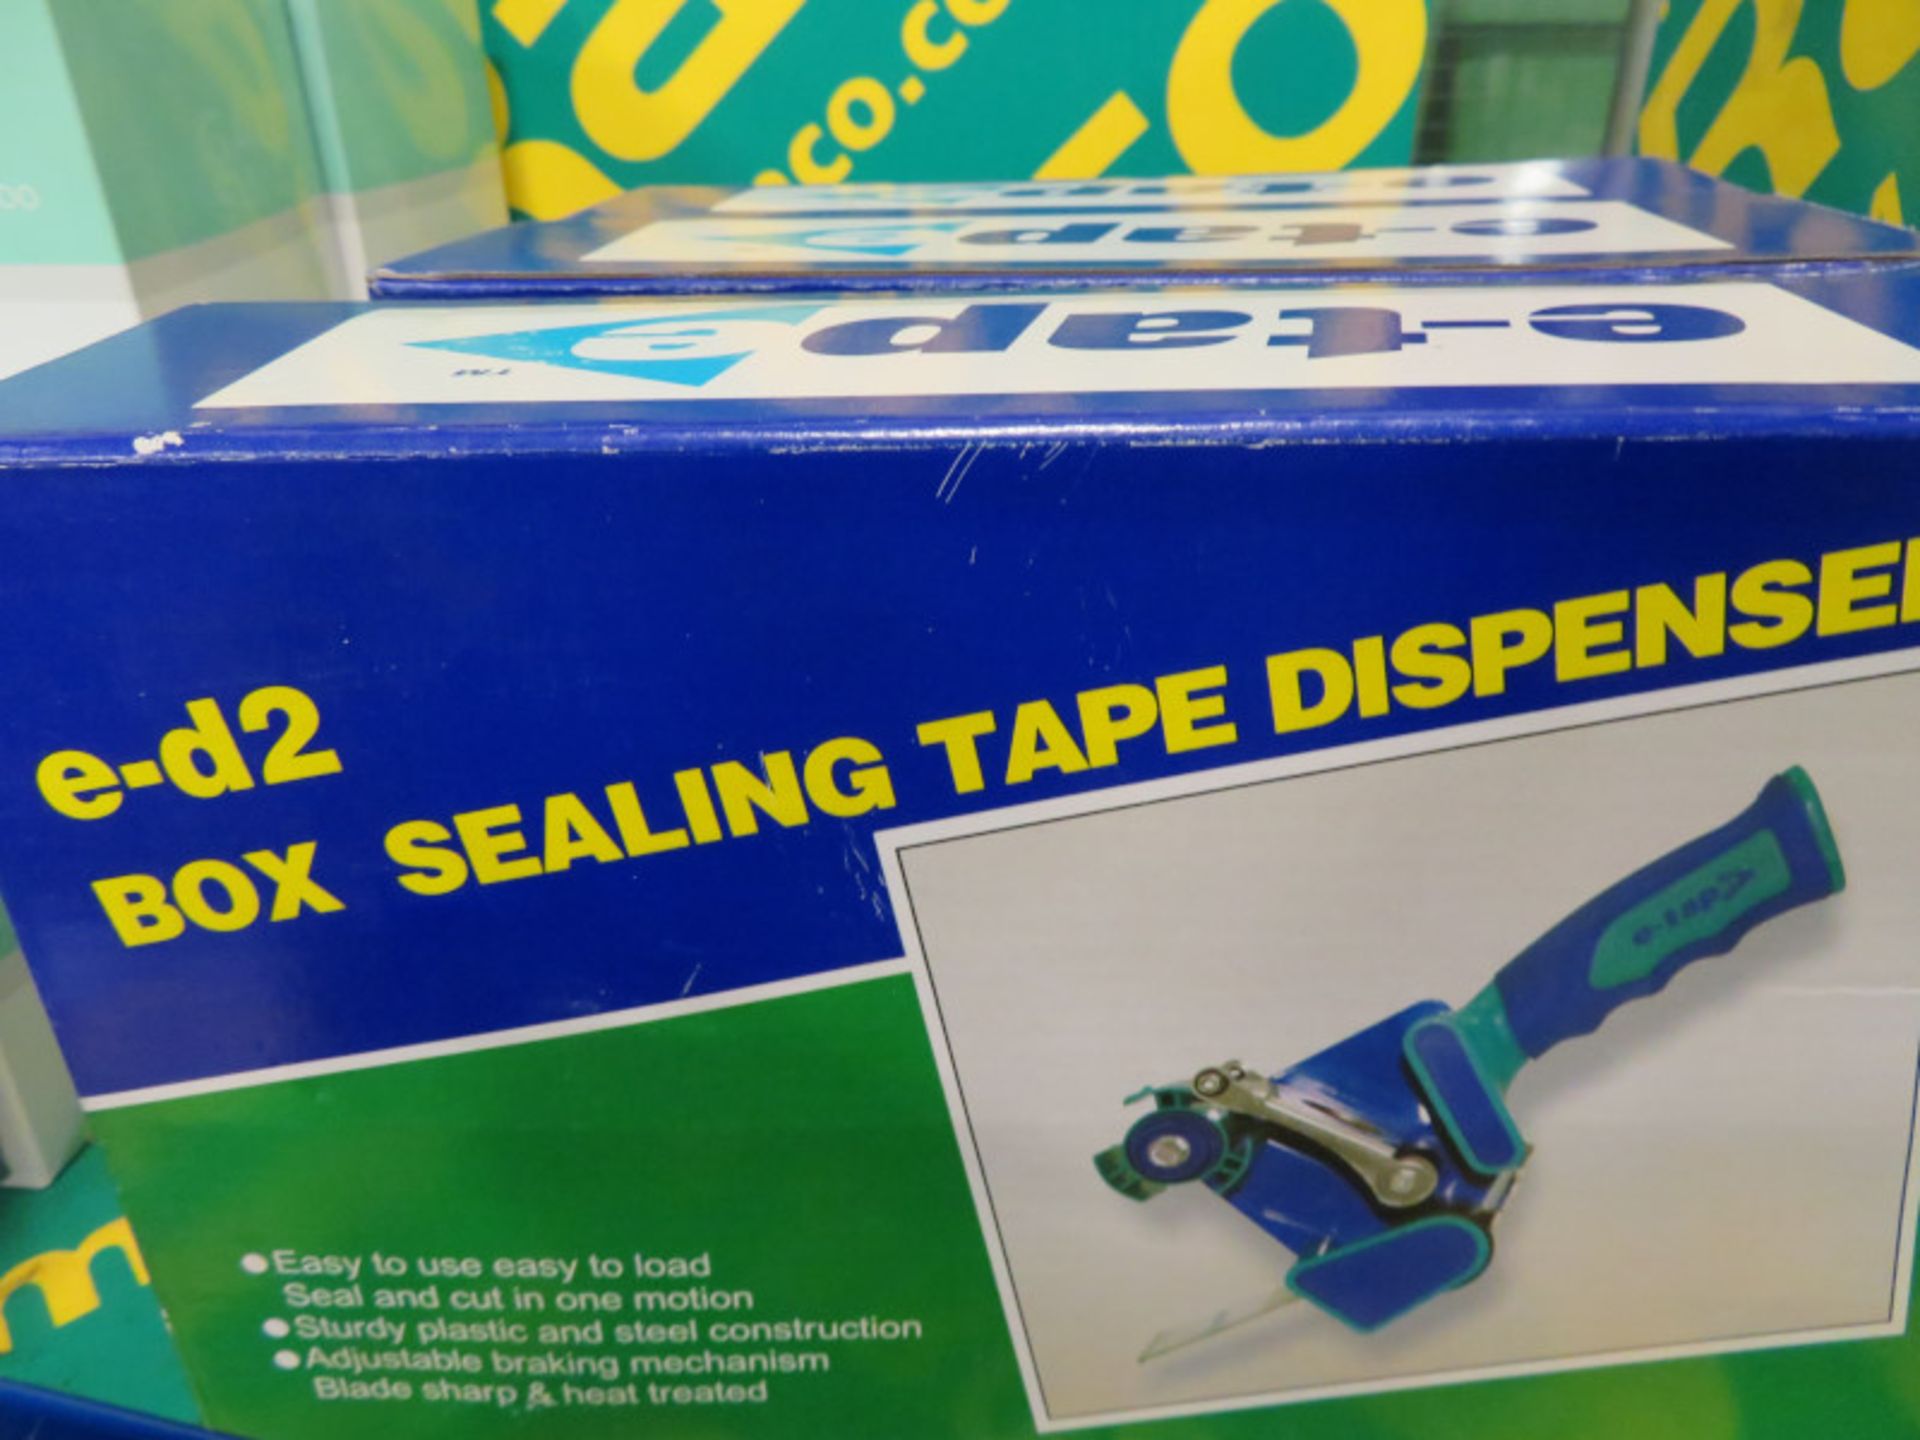 E-Tape box sealing tape dispensers x3 - Image 3 of 3